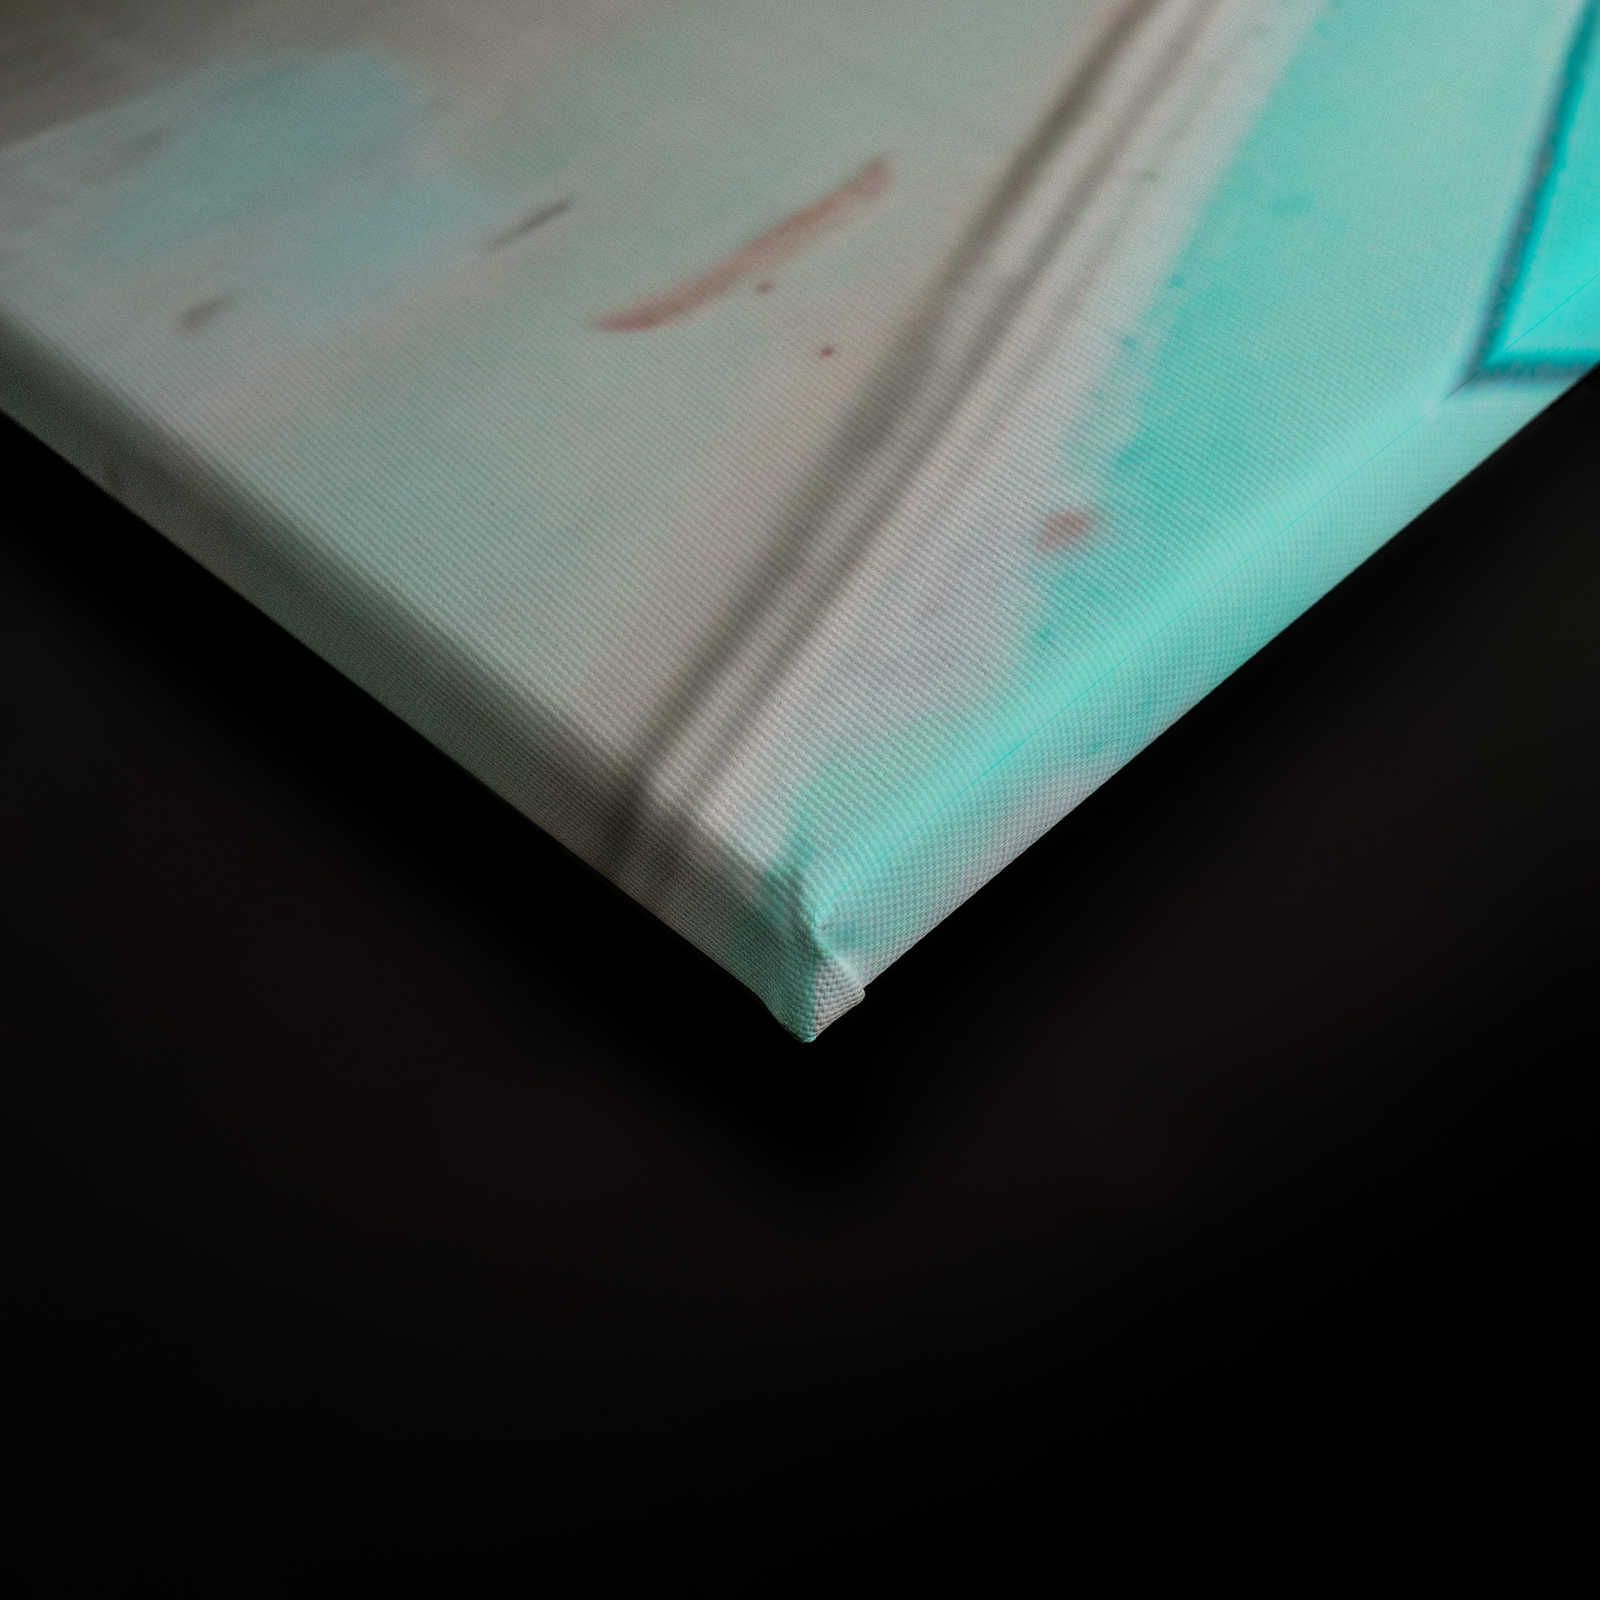             KI canvas foto »icy luiaard« - 90 cm x 60 cm
        